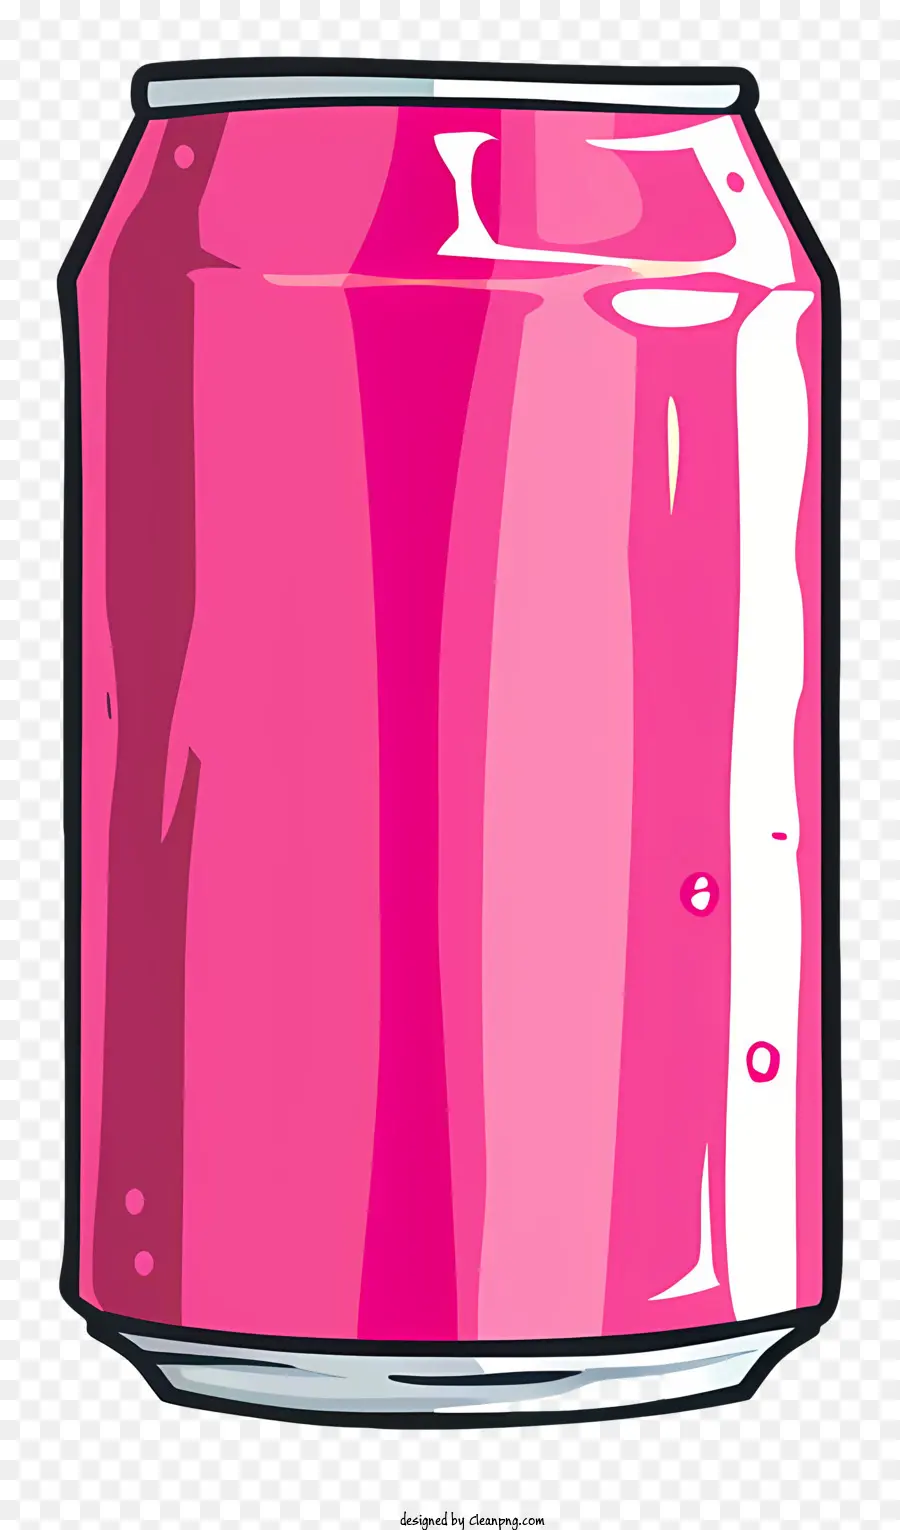 Rosa Soda Dose Soda kann rosa kohlensäurehaltige Getränkegetränke - Pink Soda Dose mit schwarzem Etikett, Orangenmütze